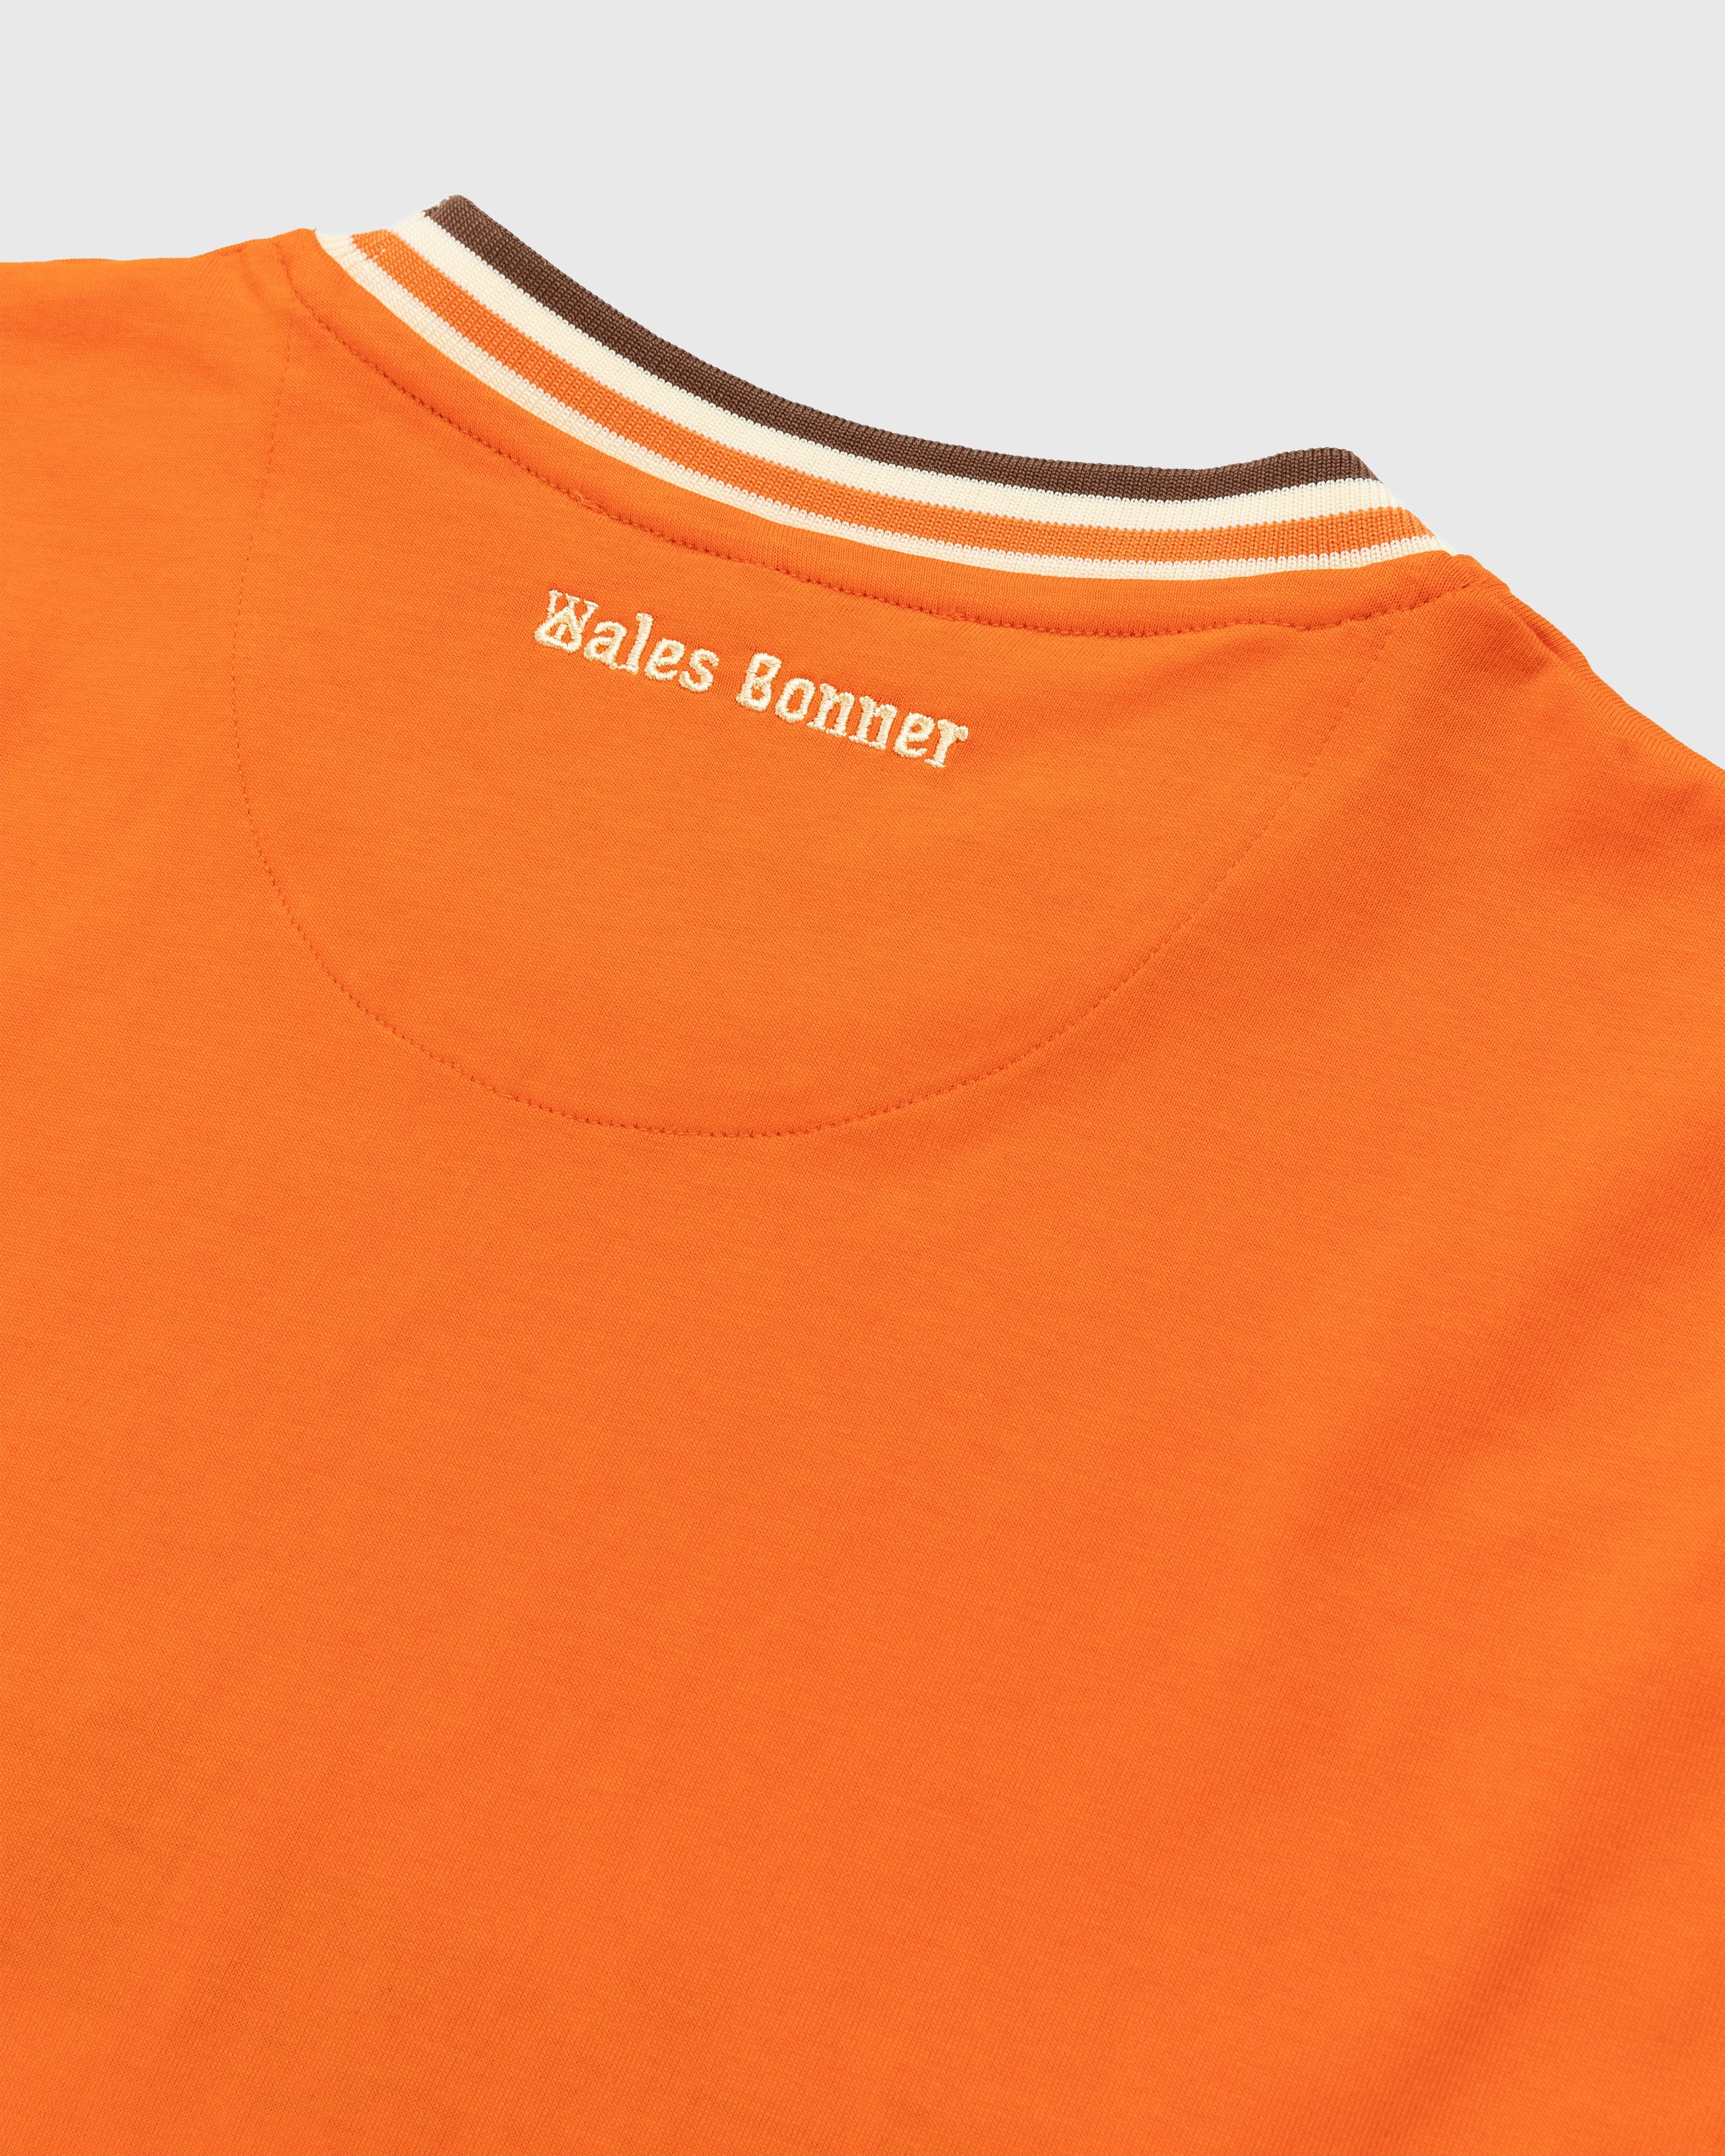 Wales Bonner - Original T-Shirt Orange - Clothing - Orange - Image 3